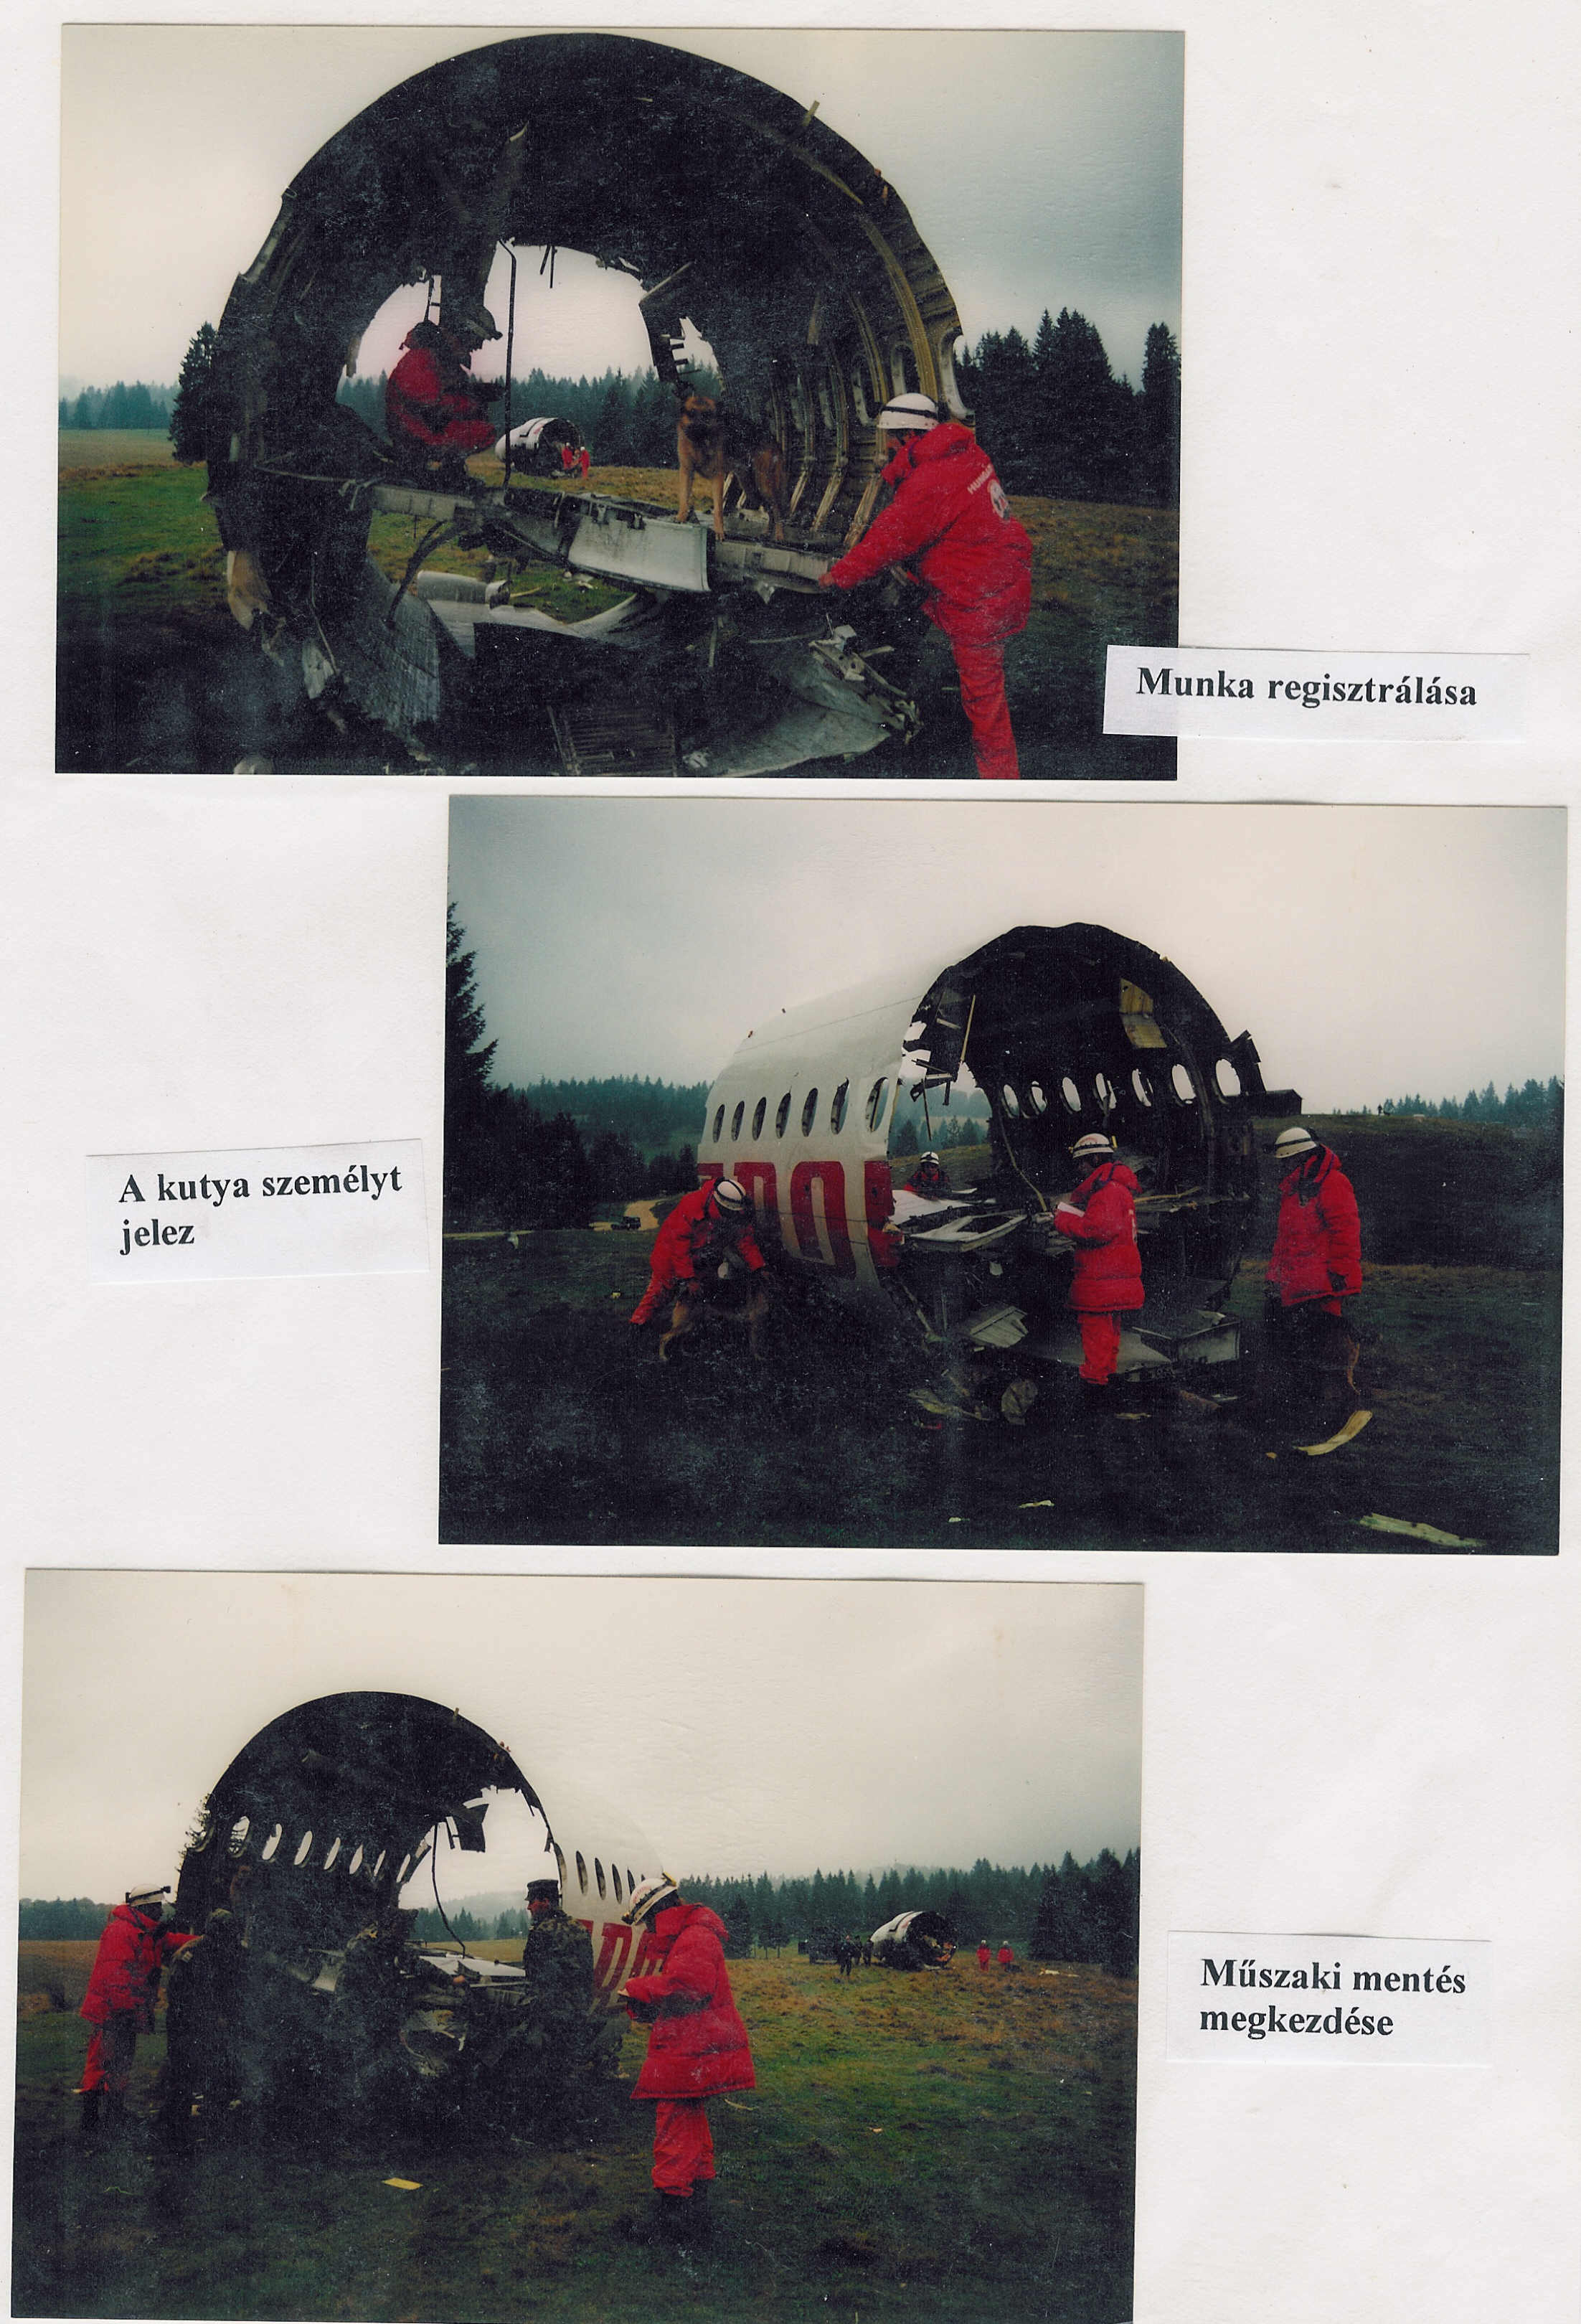 1997 Romania légikatasztrófa imitáció